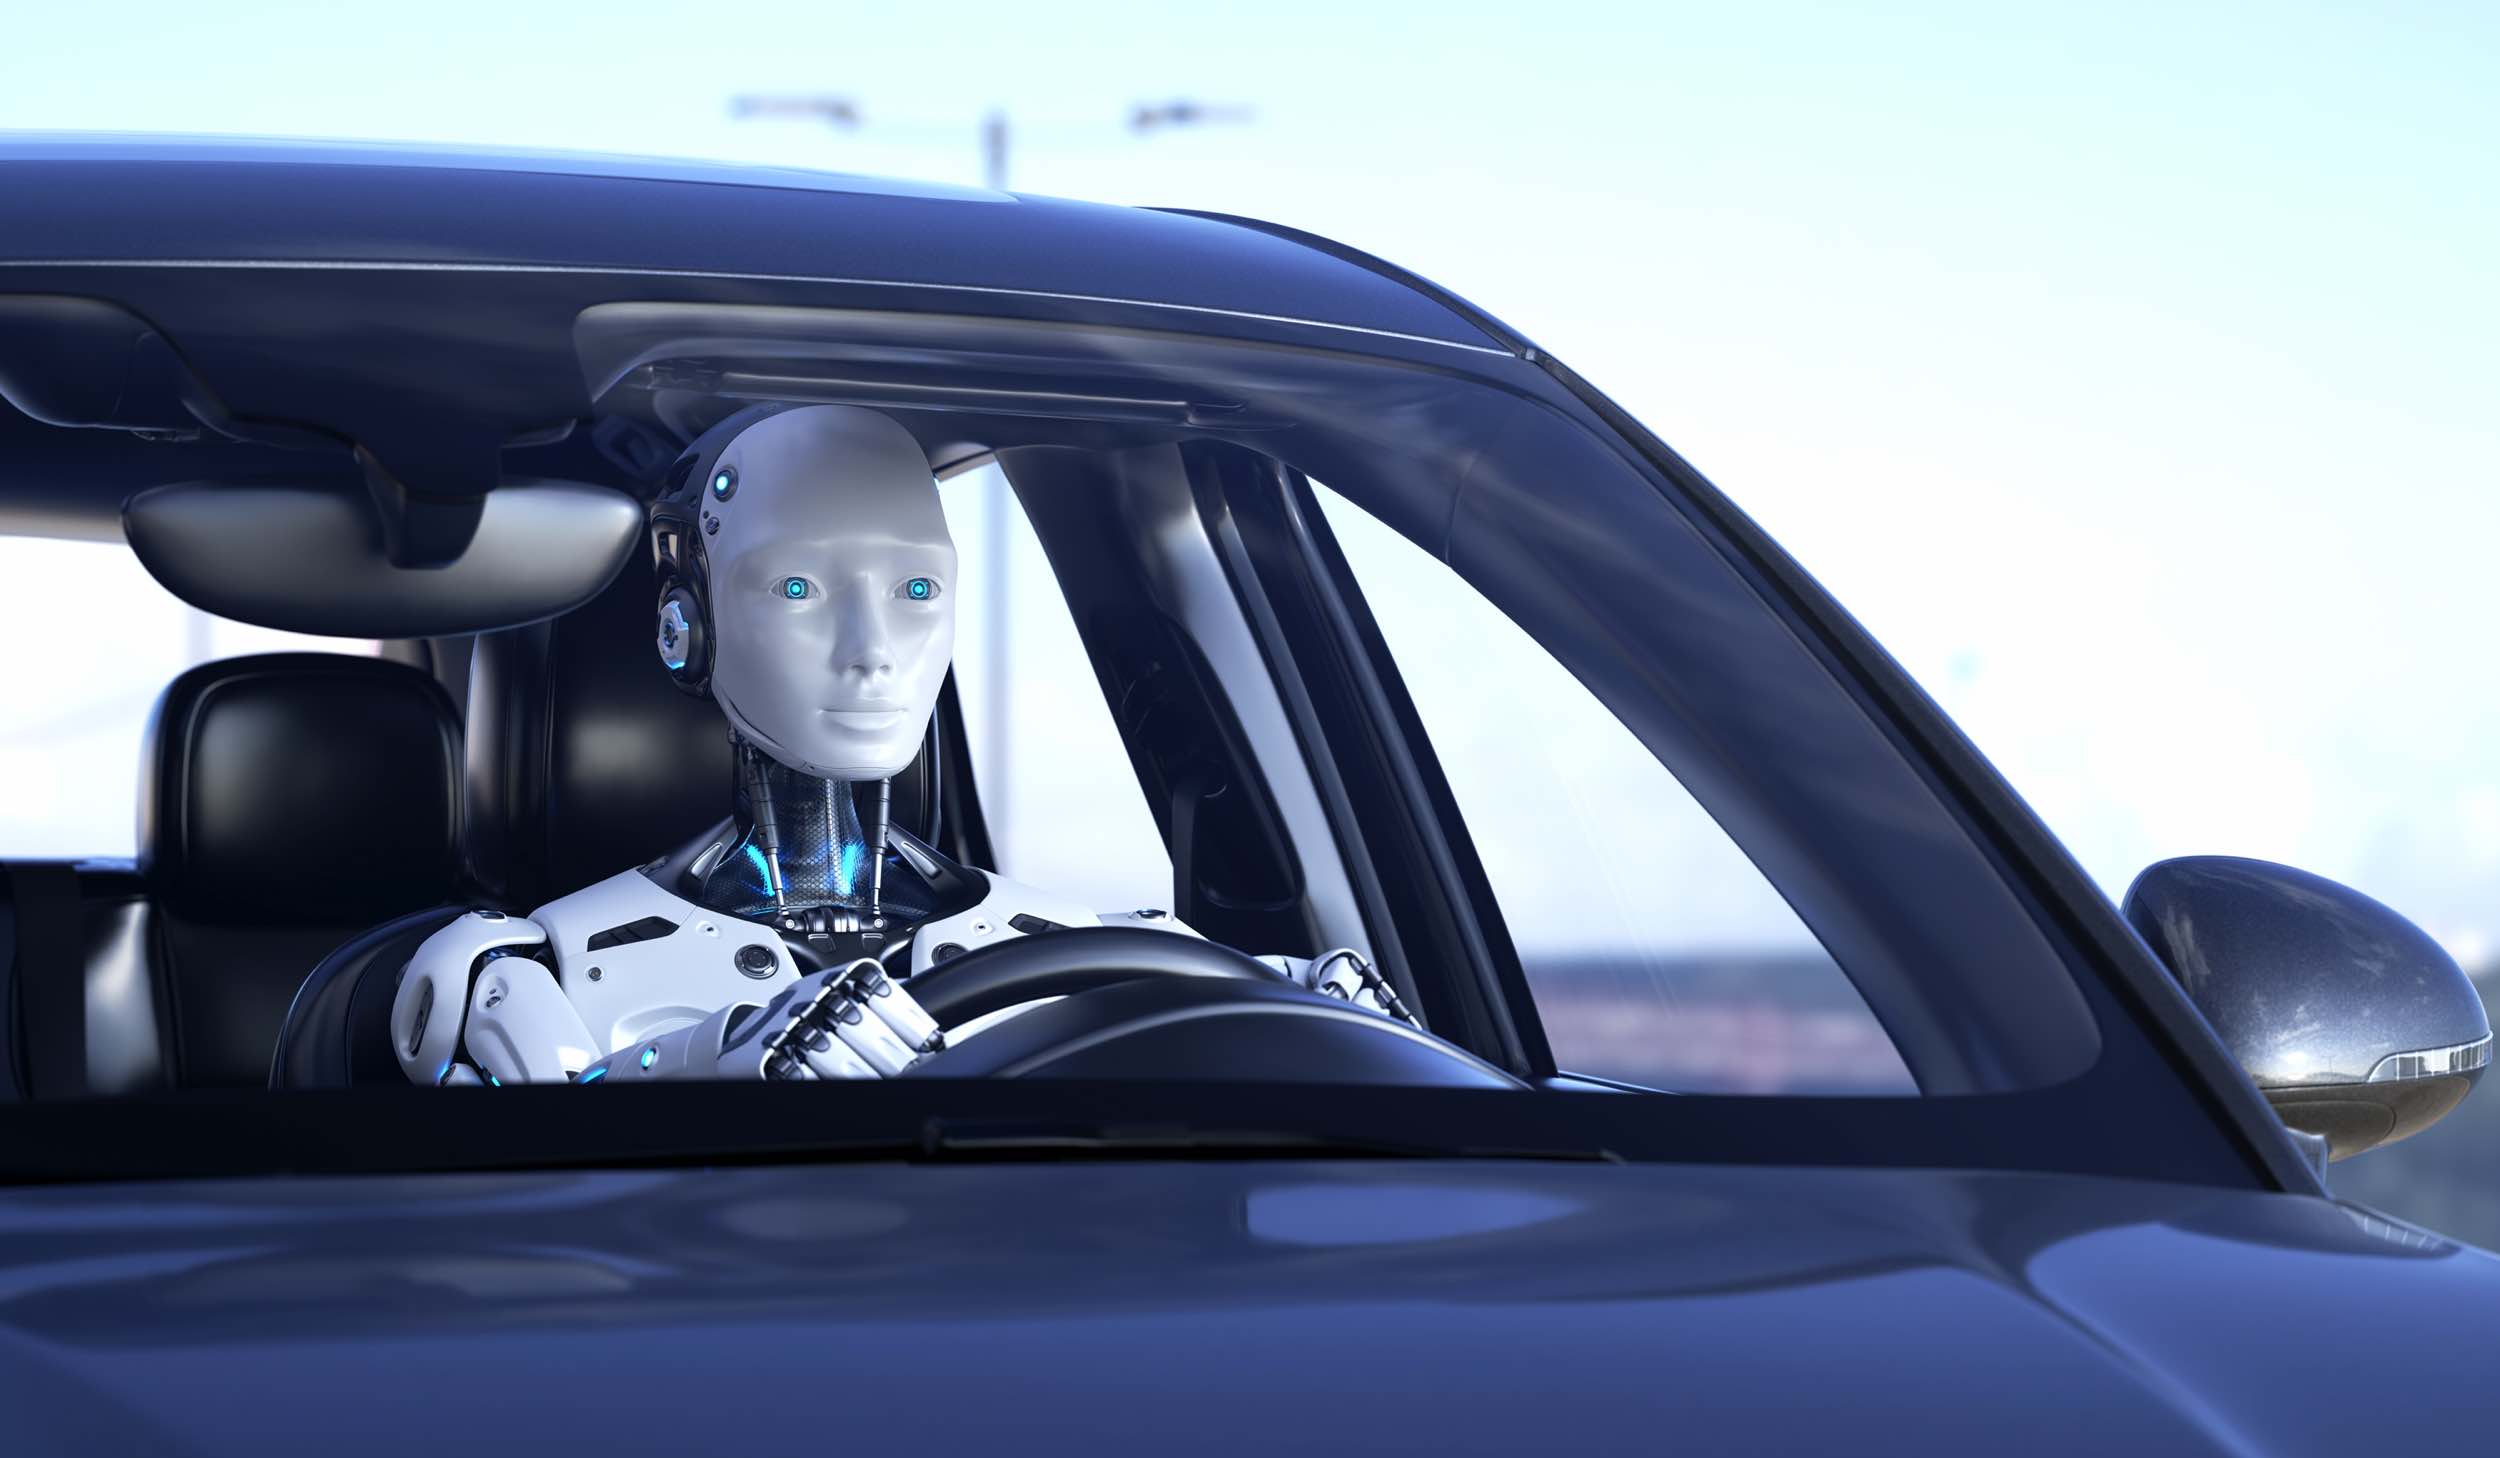 Robot jedzie samochodem, futurystyczna ilustracja do artykułu